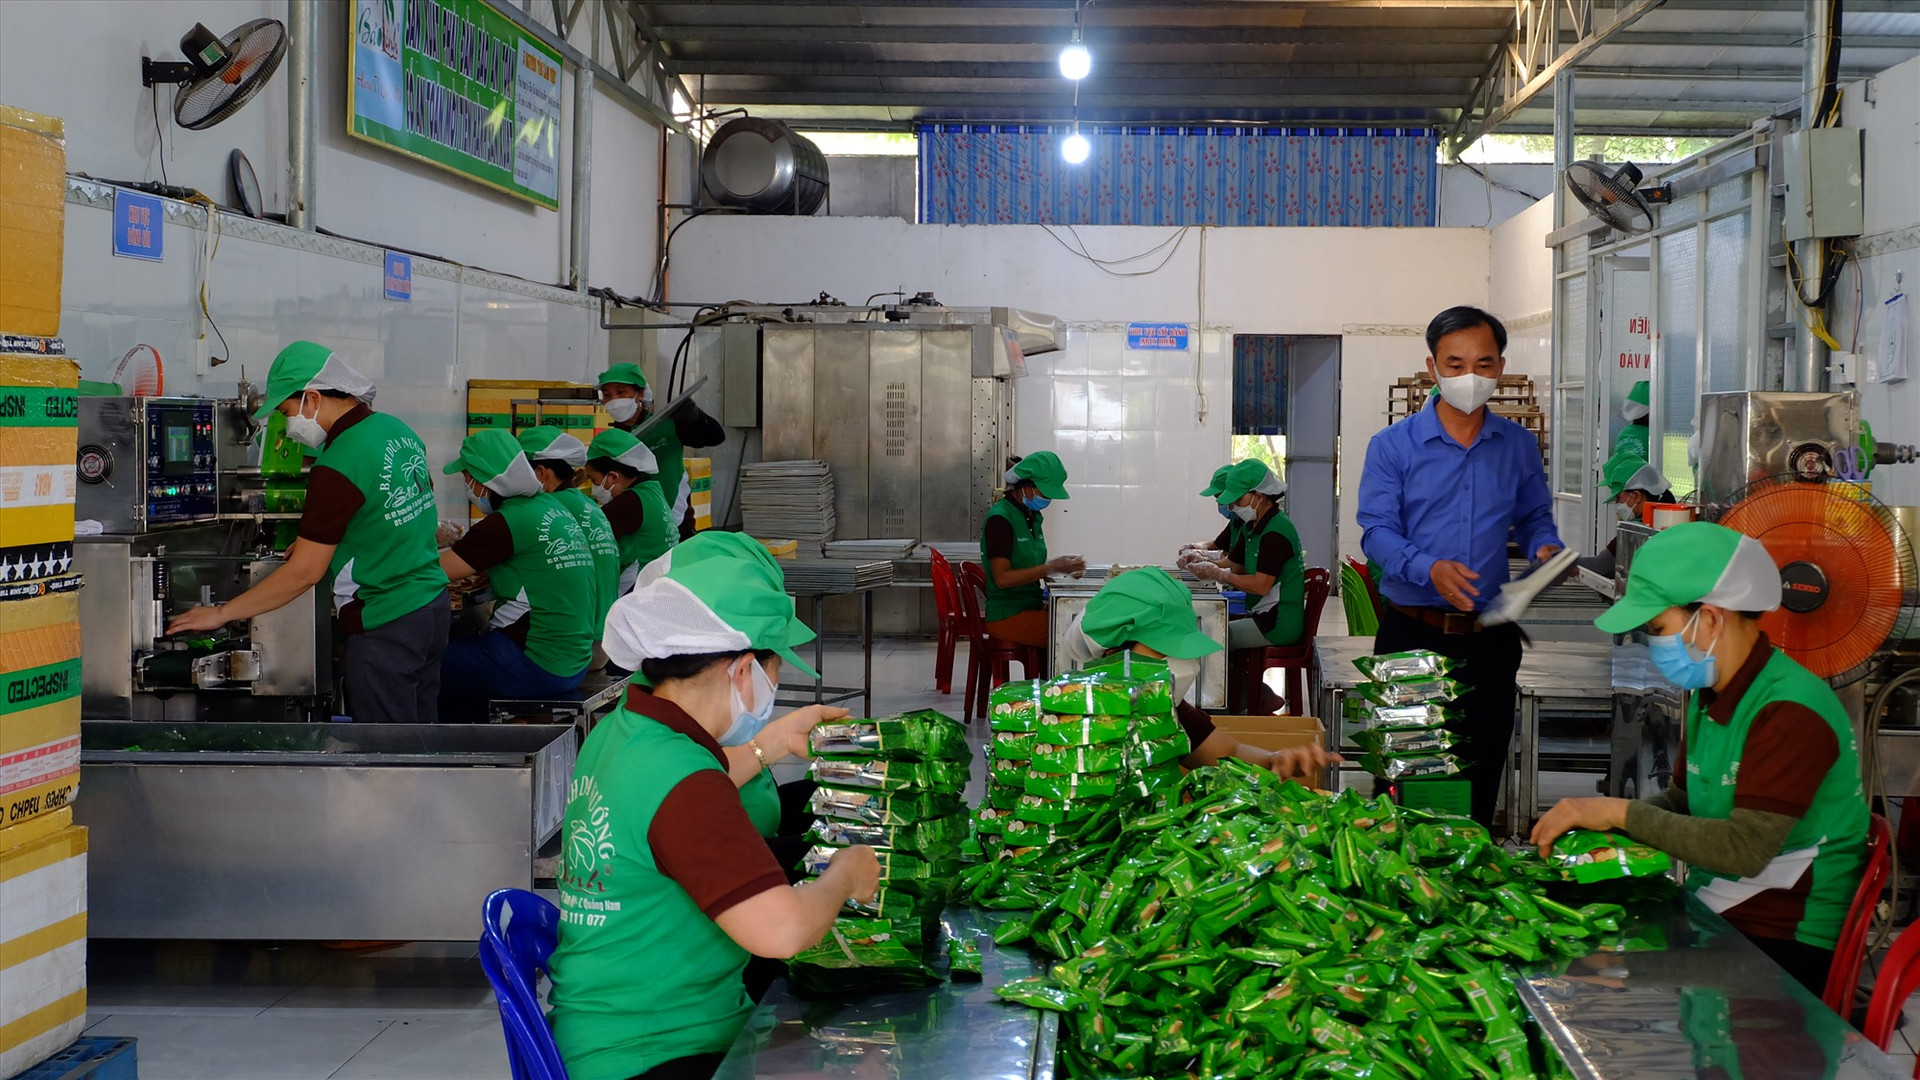 Cơ sở sản xuất bánh dừa nướng Bảo Linh luôn chú trọng đảm bảo an toàn vệ sinh thực phẩm. ẢNH: A.B